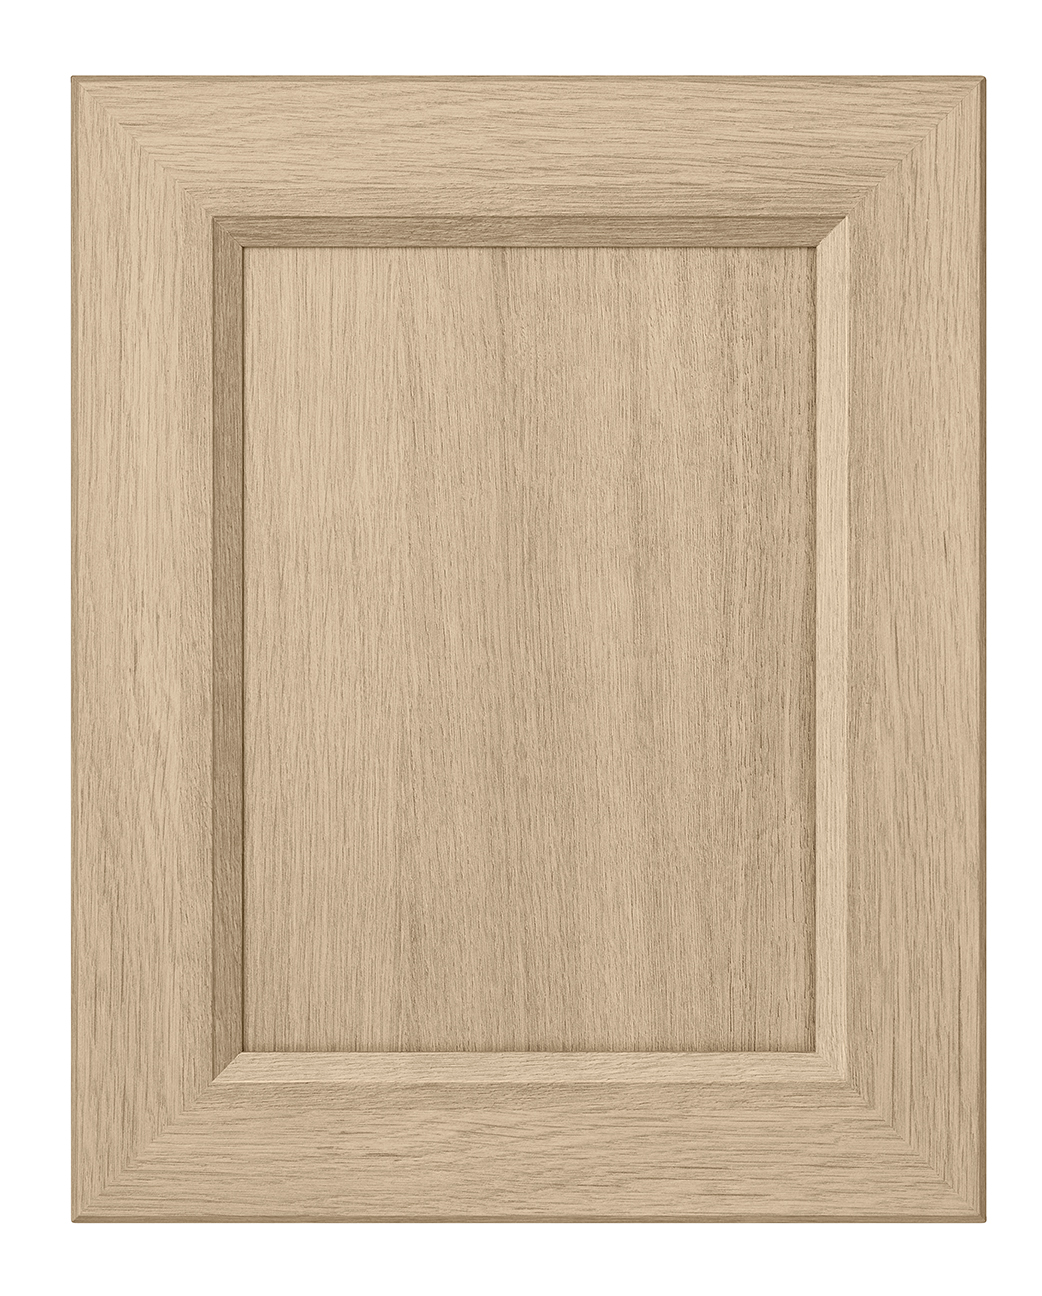 Beta cabinet door in Tafisa 581 Sheer Beauty